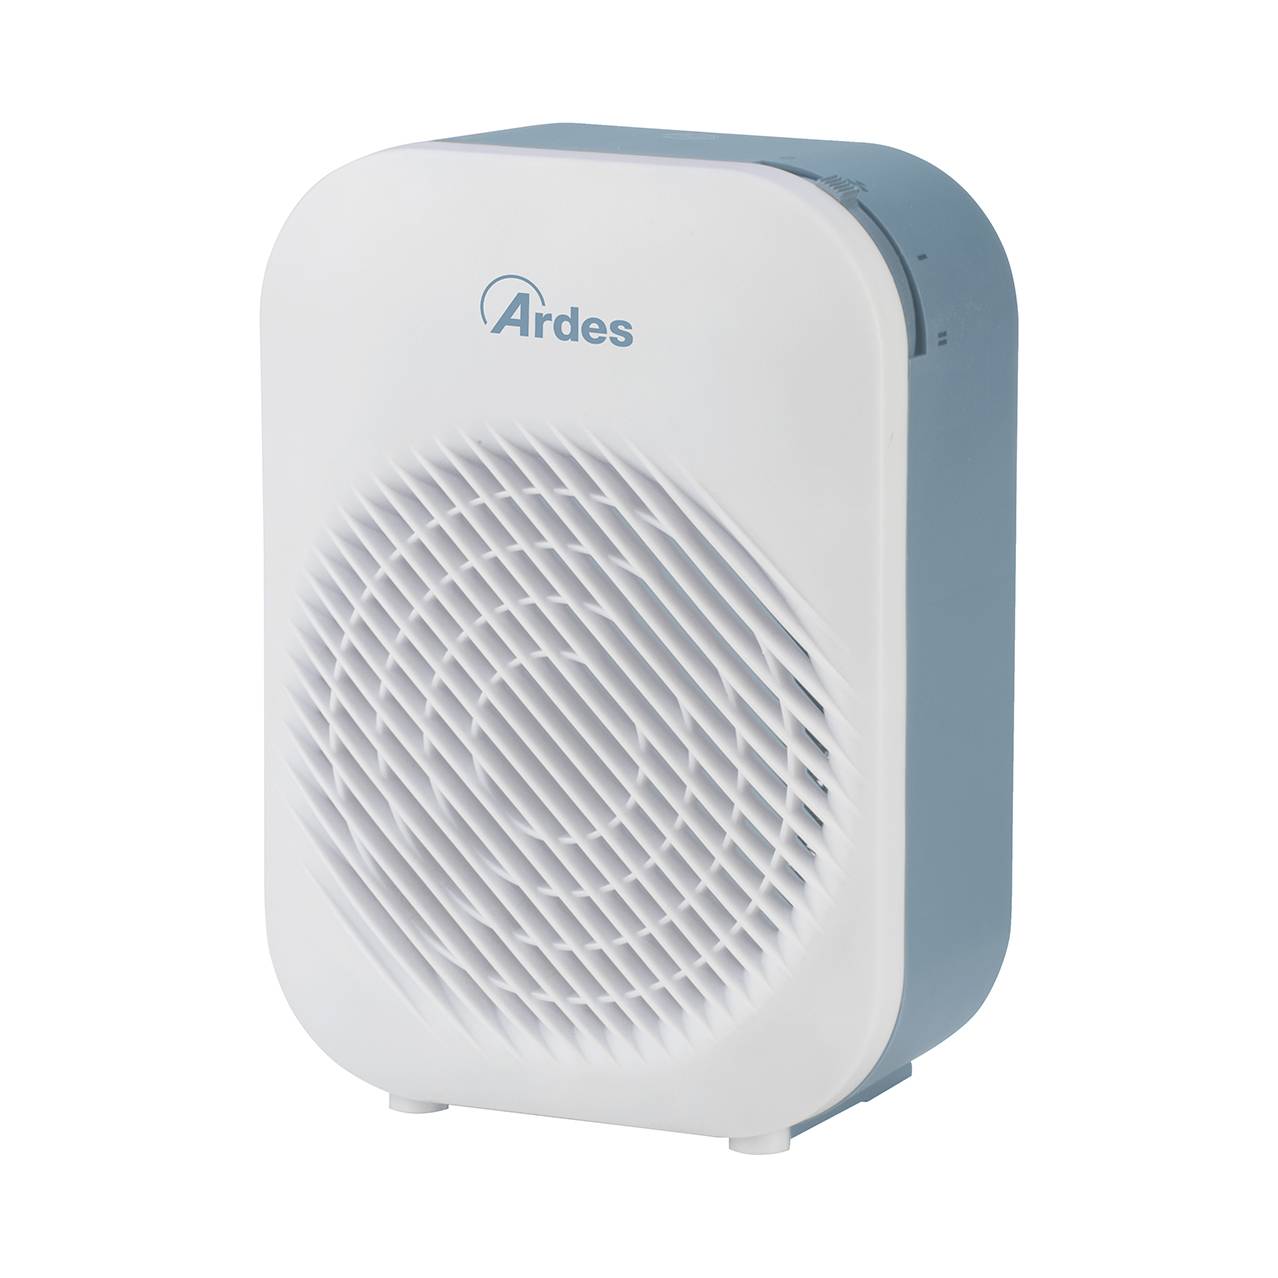 ARDES 4F14 Ventilátoros hősugárzó - A készlet erejéig rendelhető! (MK)